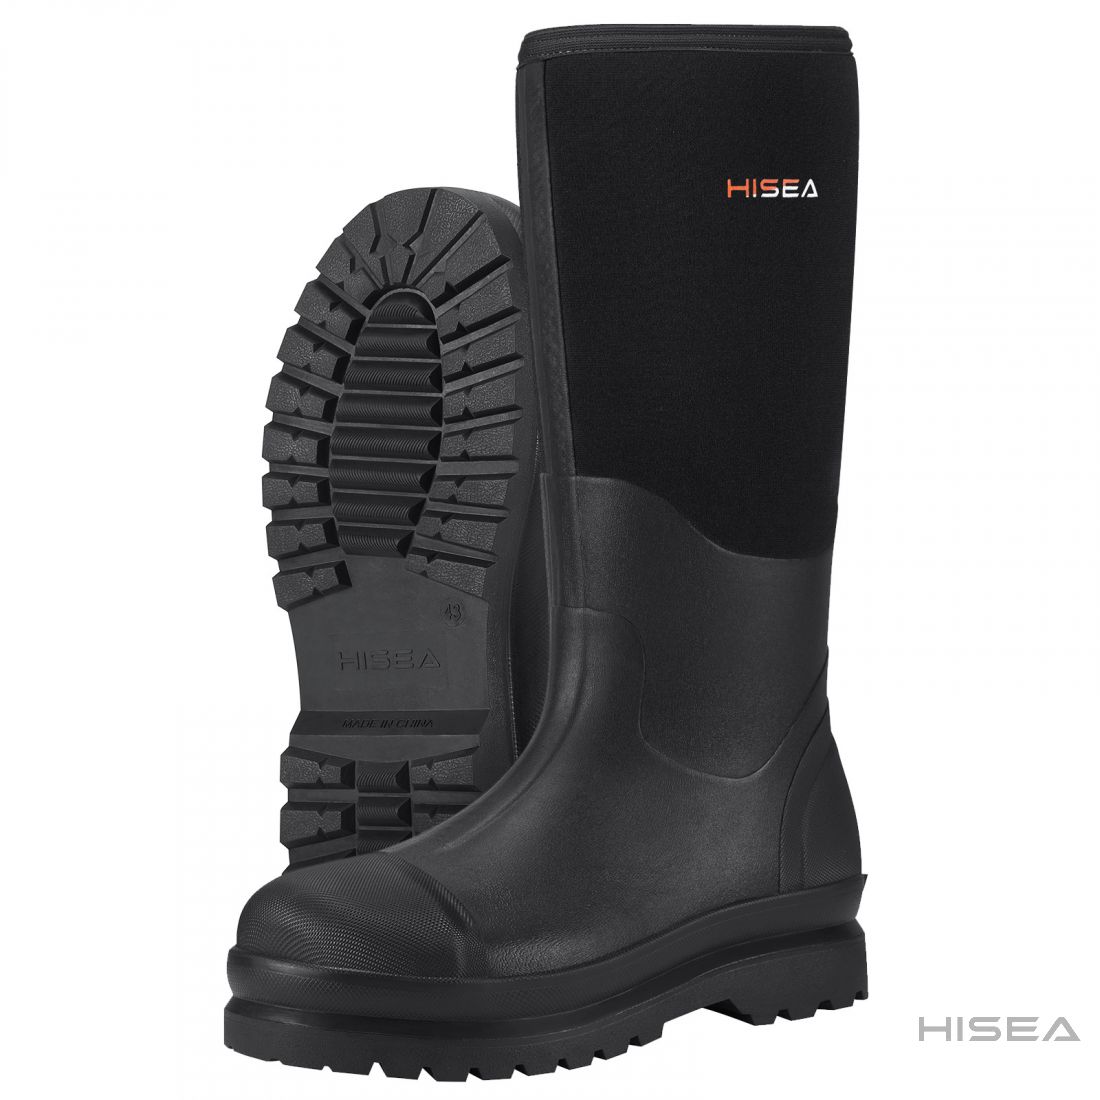 Men's Neoprene Rubber Work Boots | HISEA